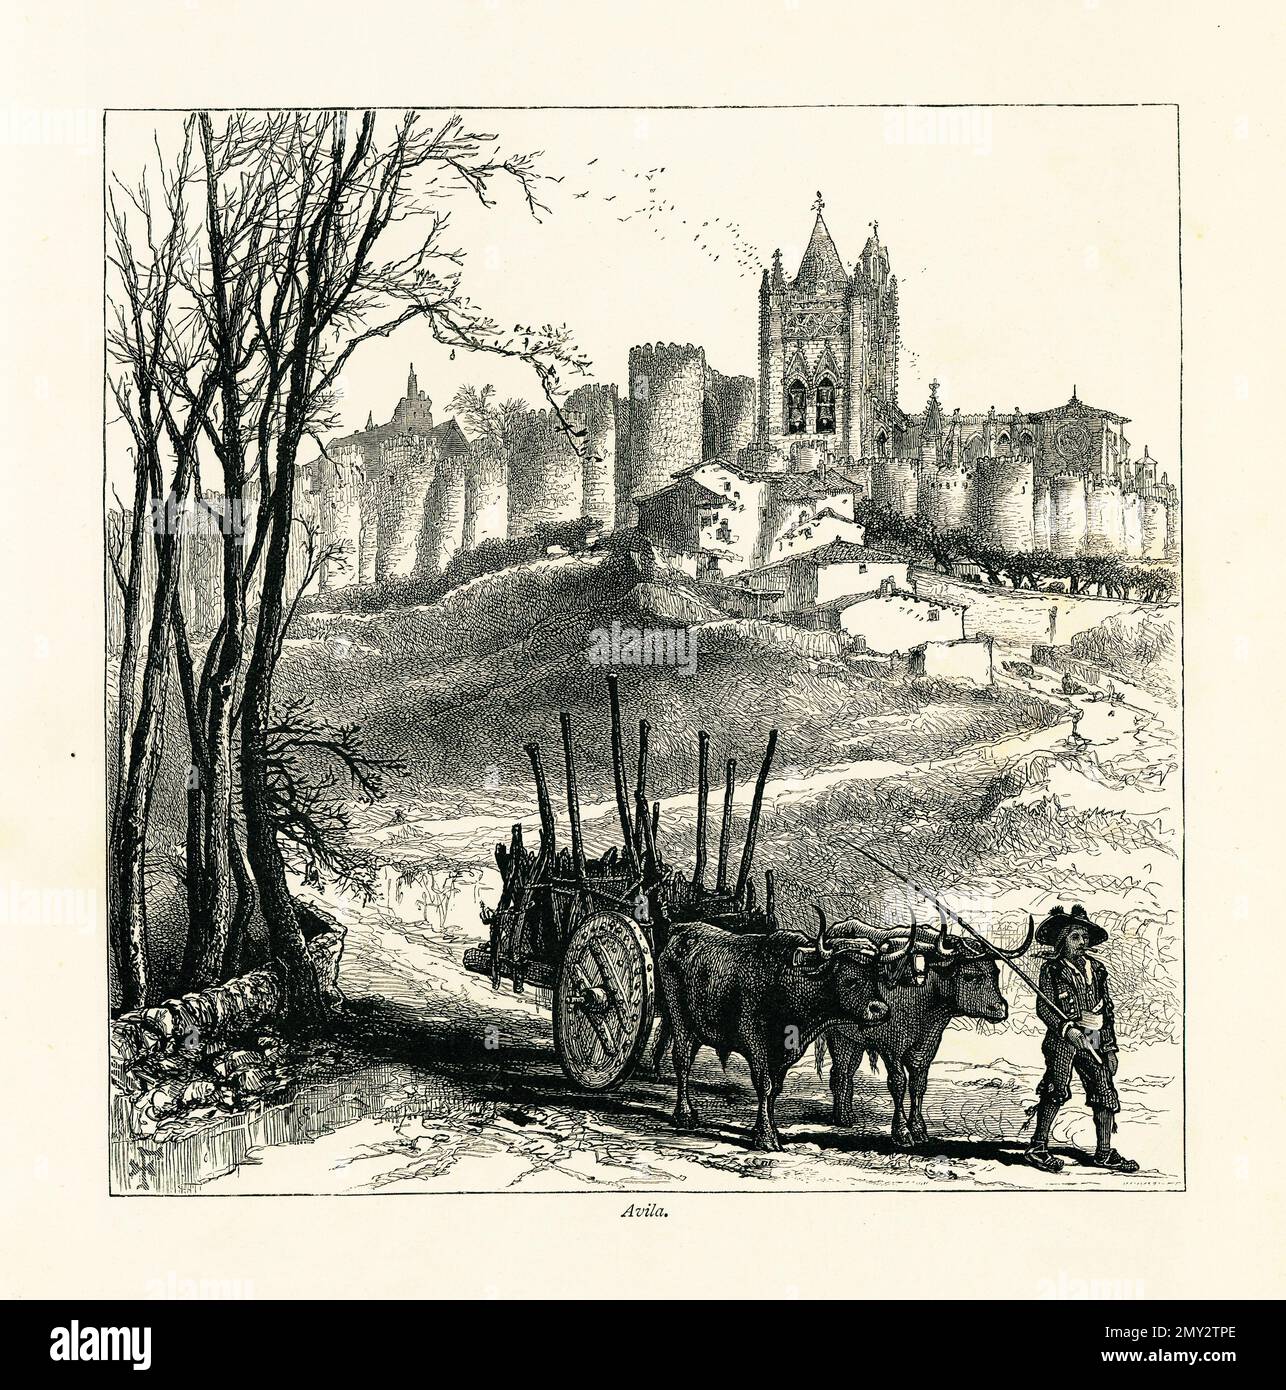 Antica incisione delle famose mura medievali di Avila, Spagna. Illustrazione pubblicata in picturesque Europe, Vol. III (Cassell & Company, Limite Foto Stock